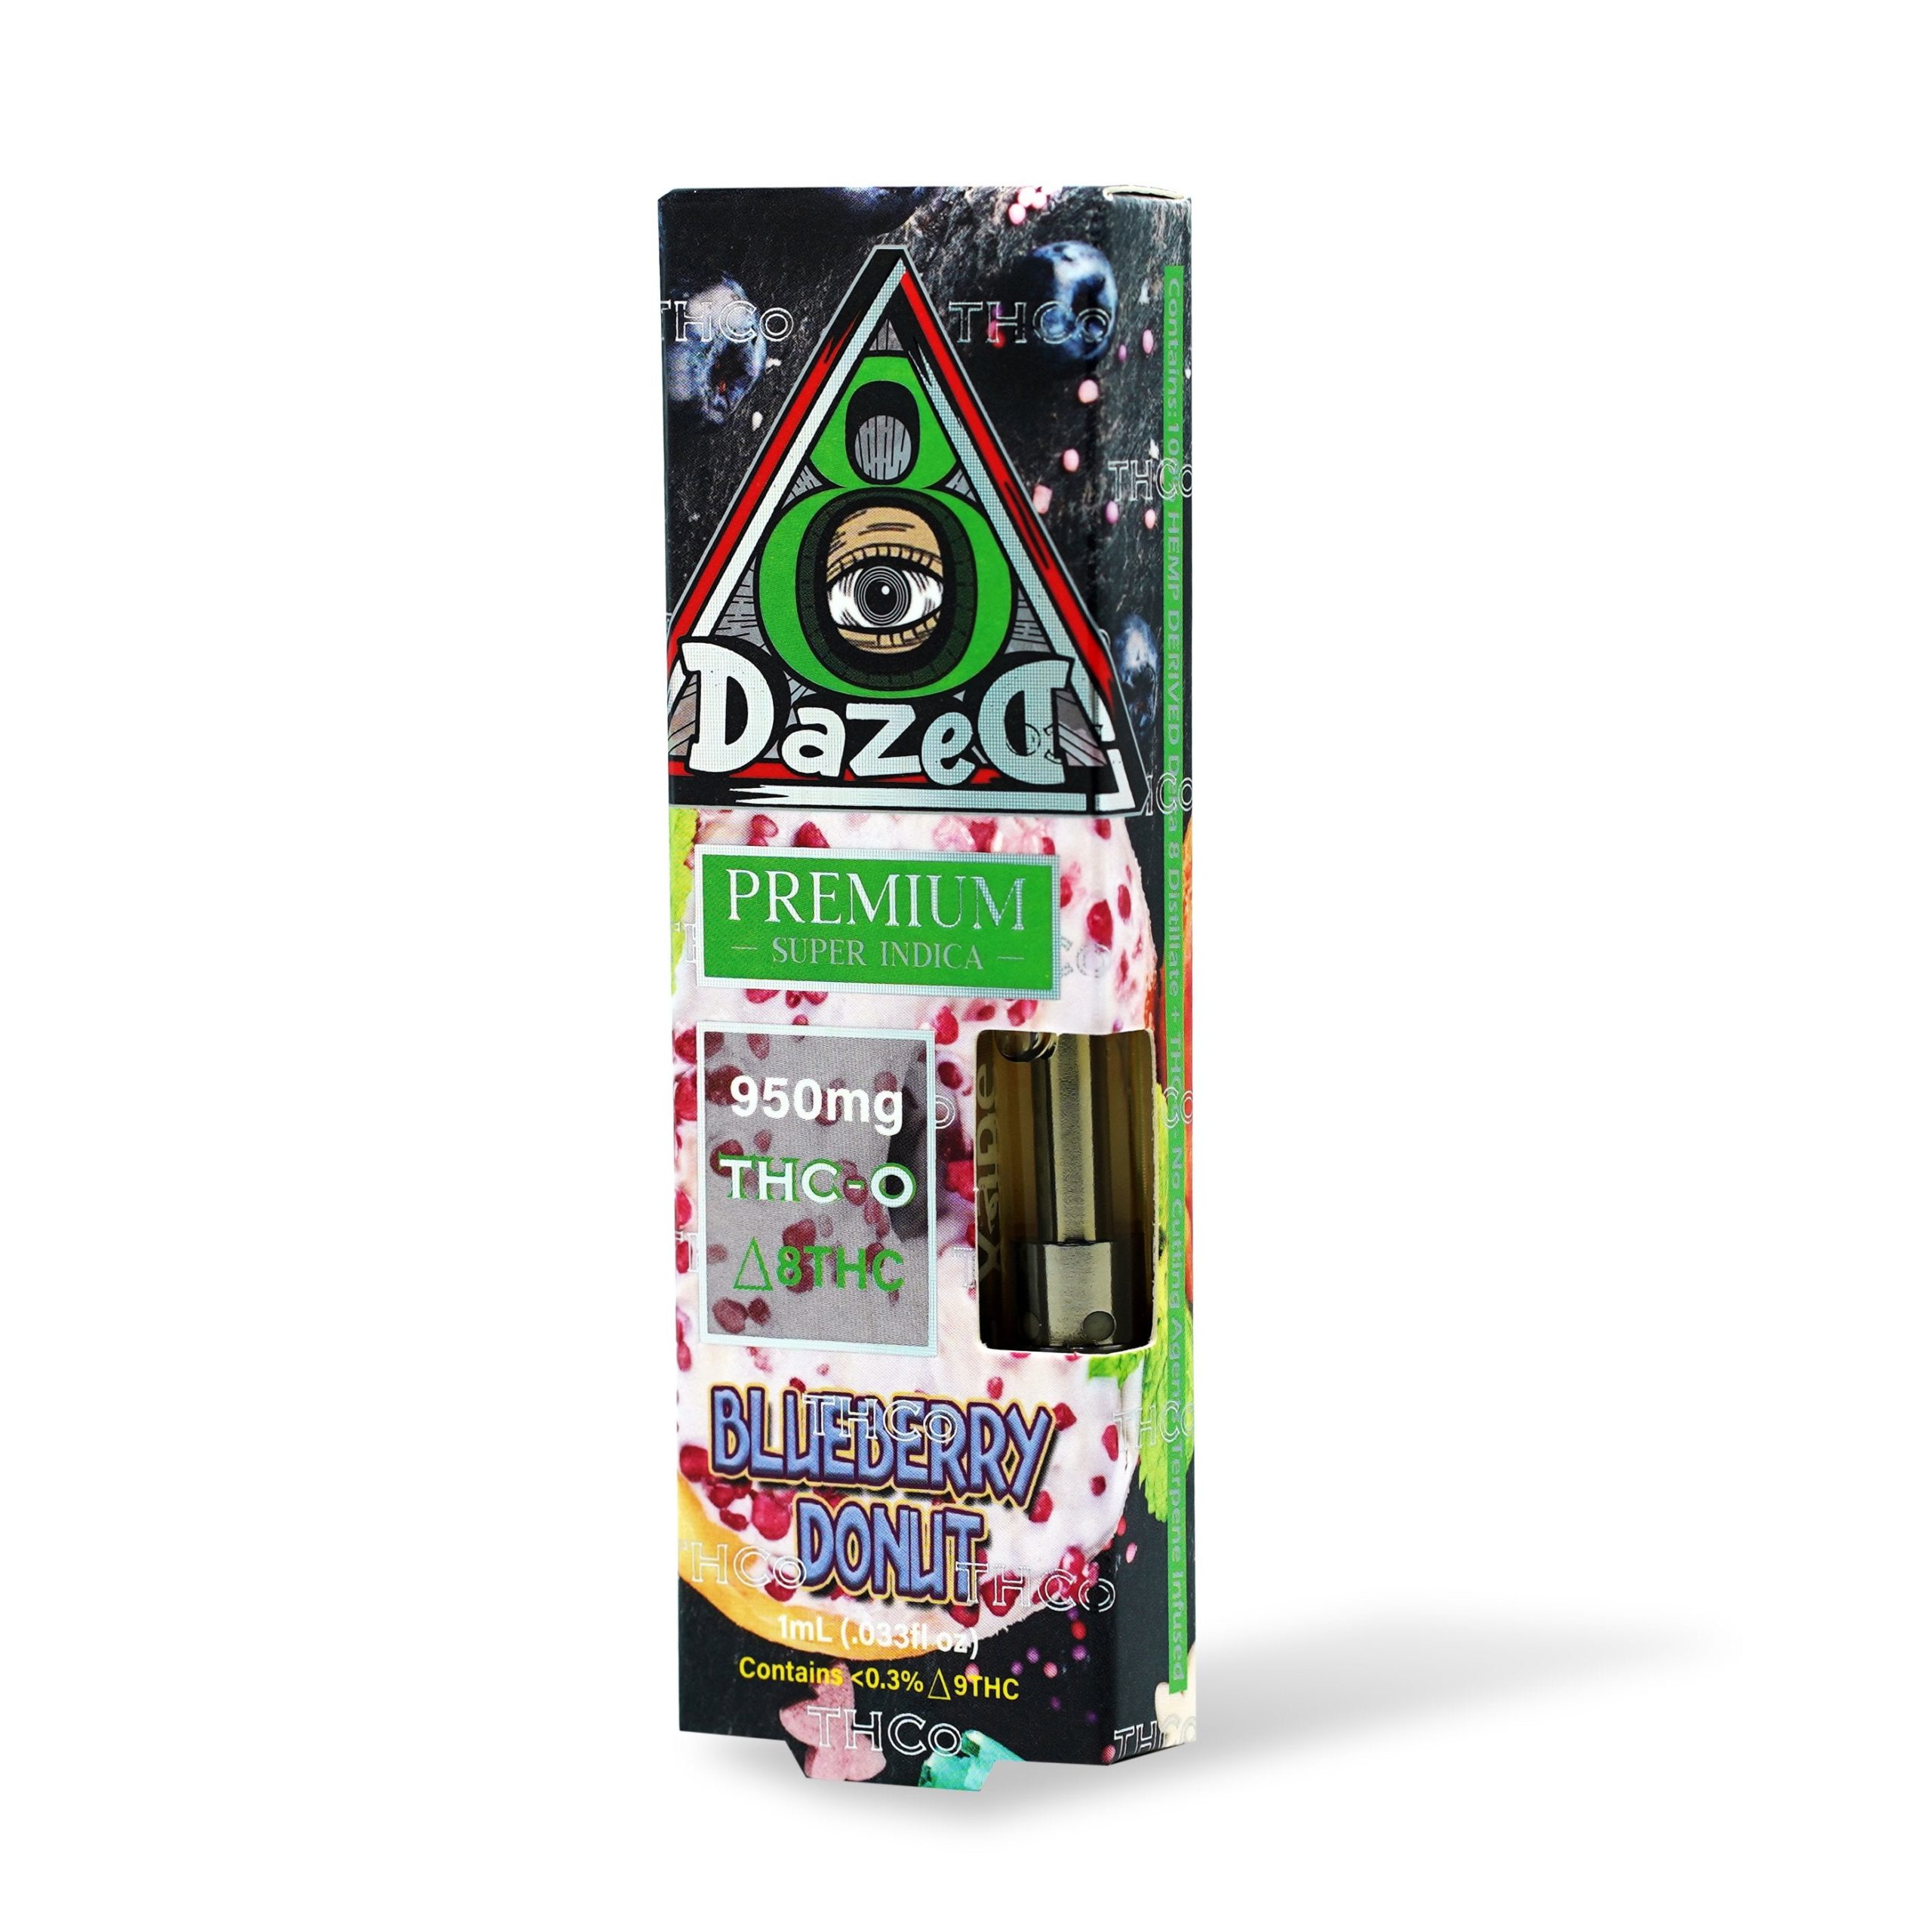 DazeD8 Blueberry Donut Delta 8 THC-O Cartridge (1g) Best Price